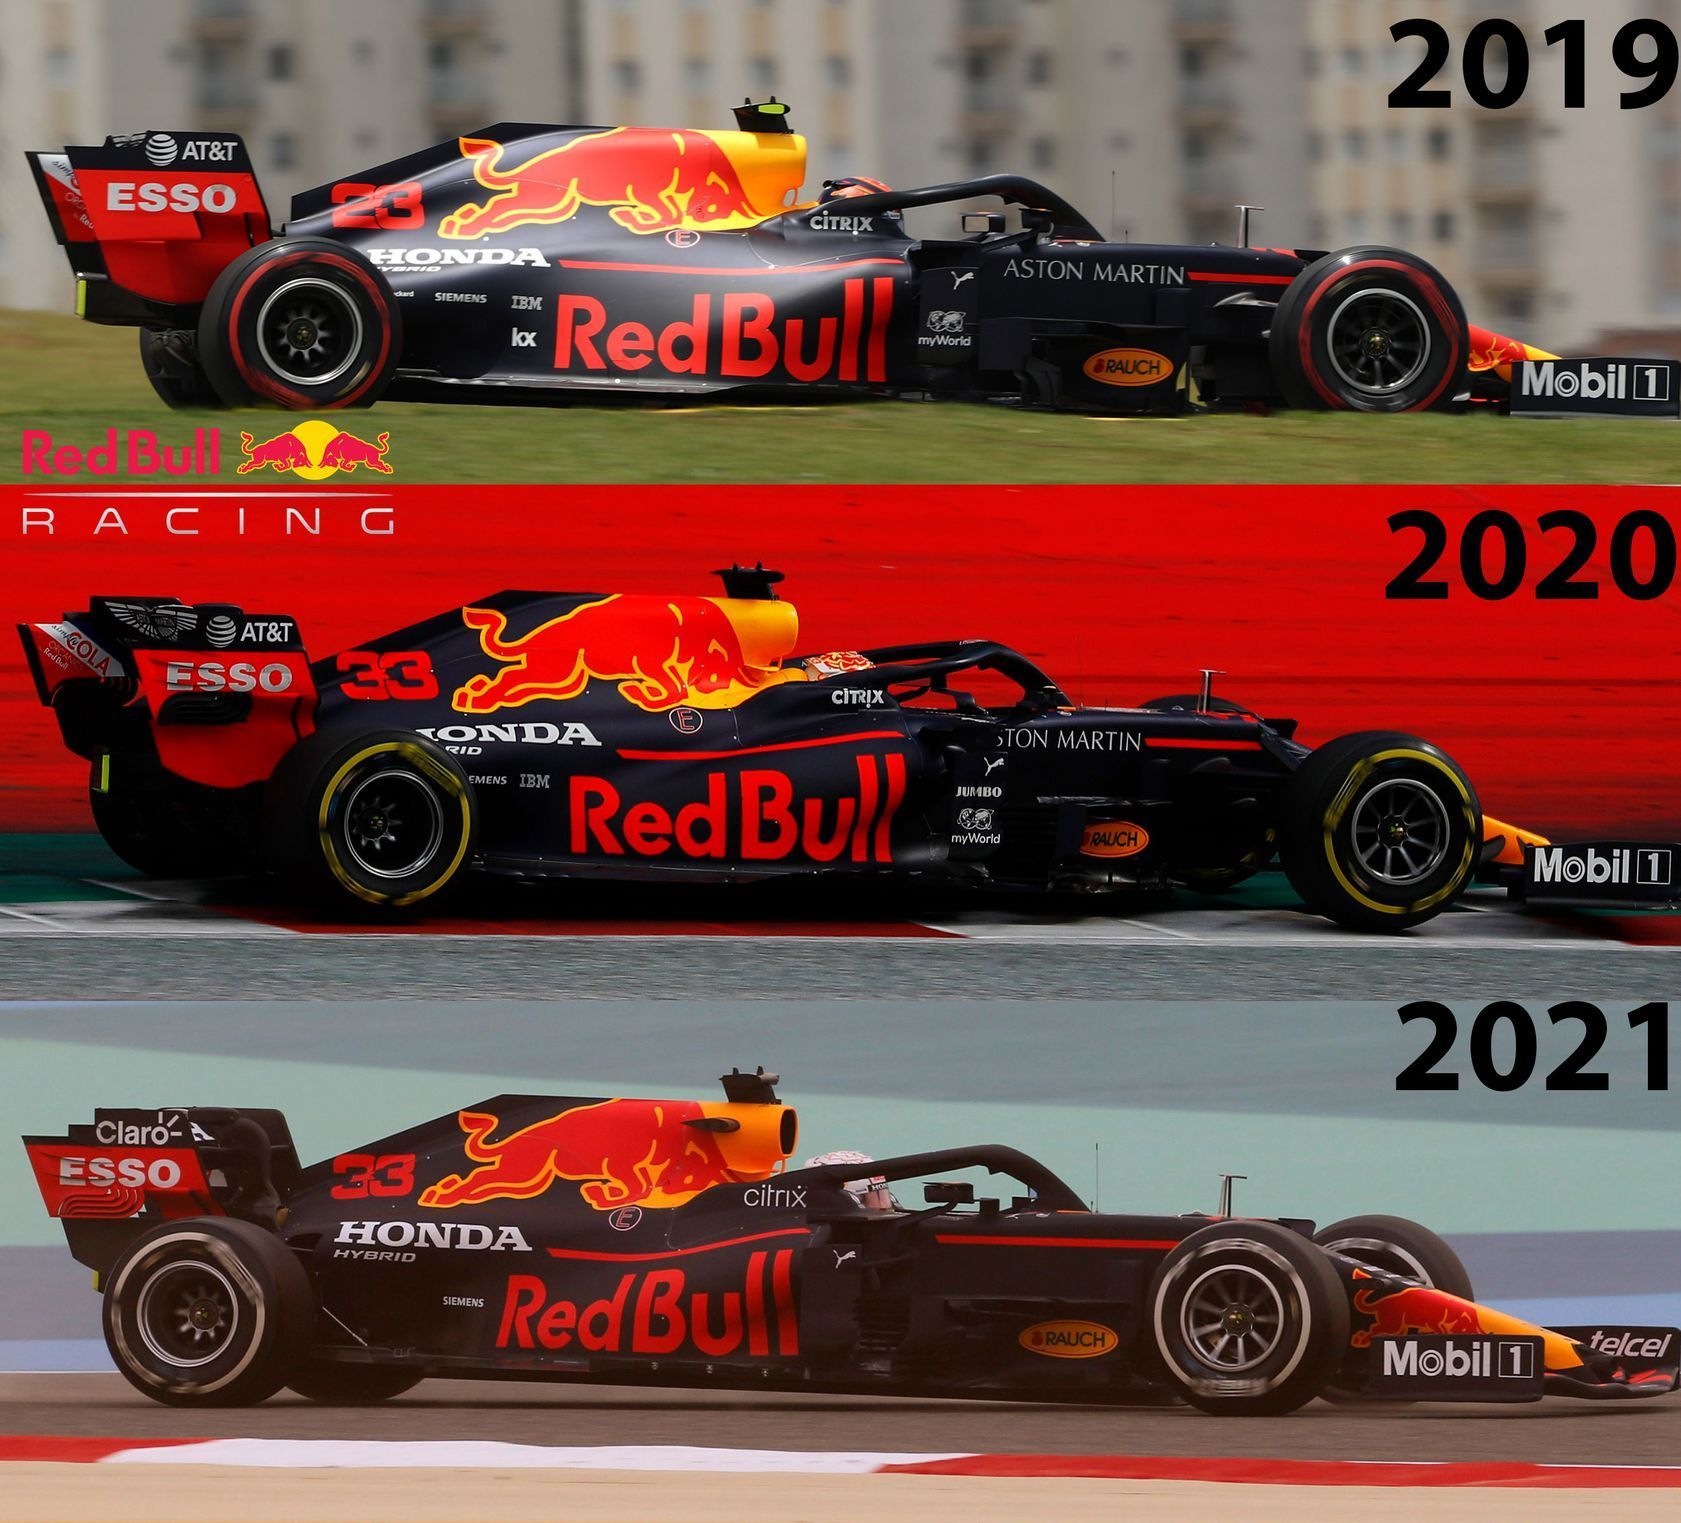 Porovnání monopostů Red Bull pro sezony 2019 až 2021